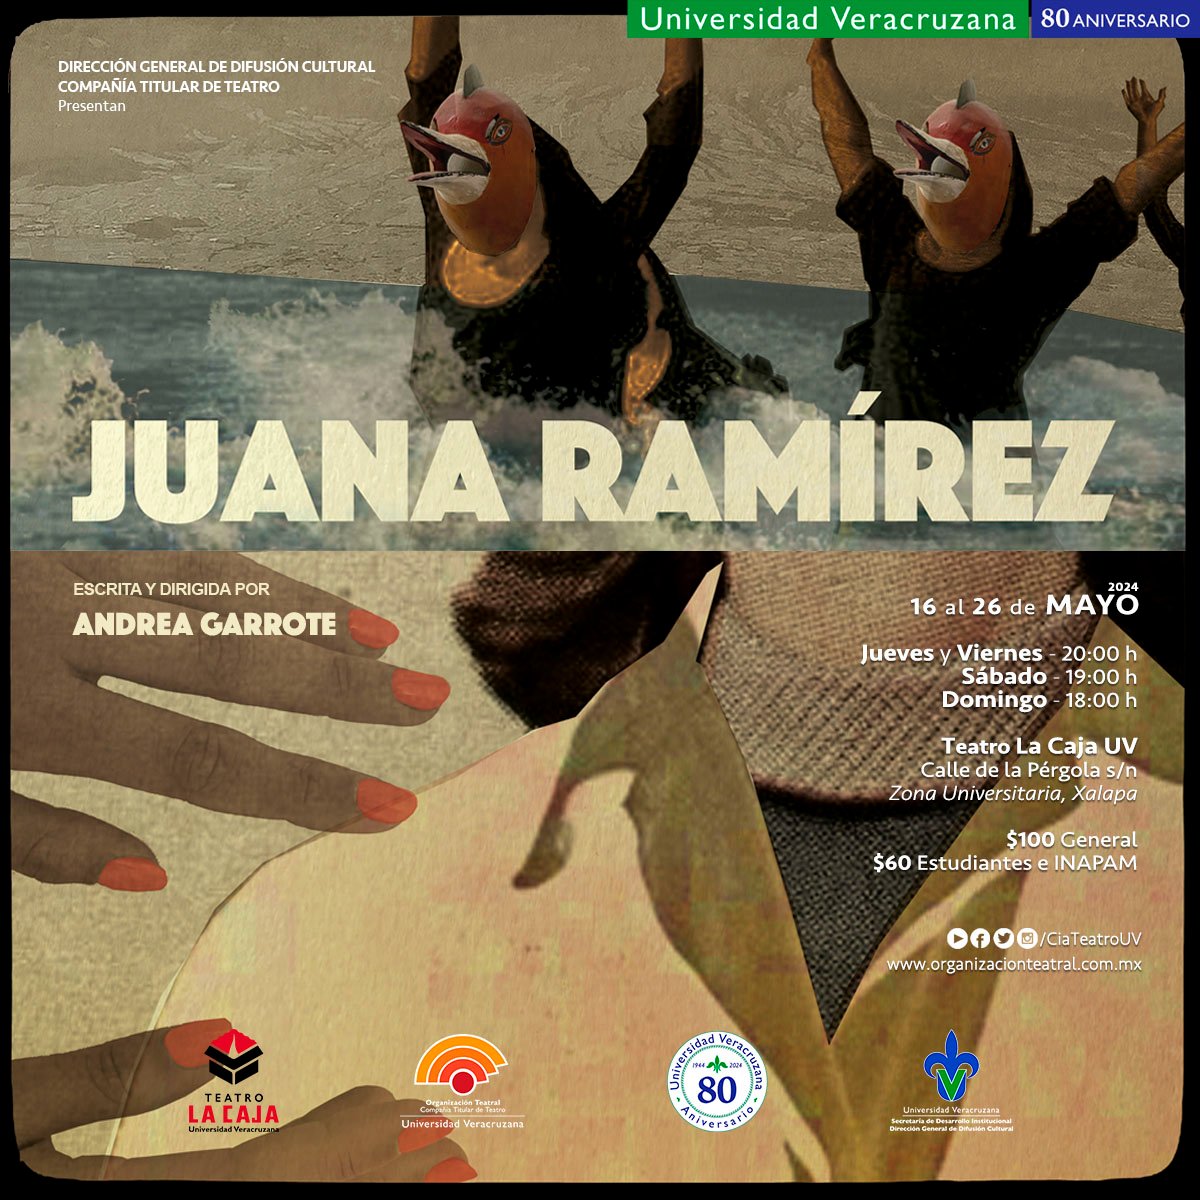 ¡REGRESA ❤️‍🔥𝗝𝗨𝗔𝗡𝗔 𝗥𝗔𝗠𝗜𝗥𝗘𝗭 al #TeatroLaCajaUV! Acompáñanos y disfruta de esta puesta en escena escrita y dirigida por #AndreaGarrote 🎟️ Reservaciones: JuanaRamirez.boletopolis.com @ComunicacionUV @DGDCulturalUV @LuzioUV @TeleUV @RadioUV @EditorialUV